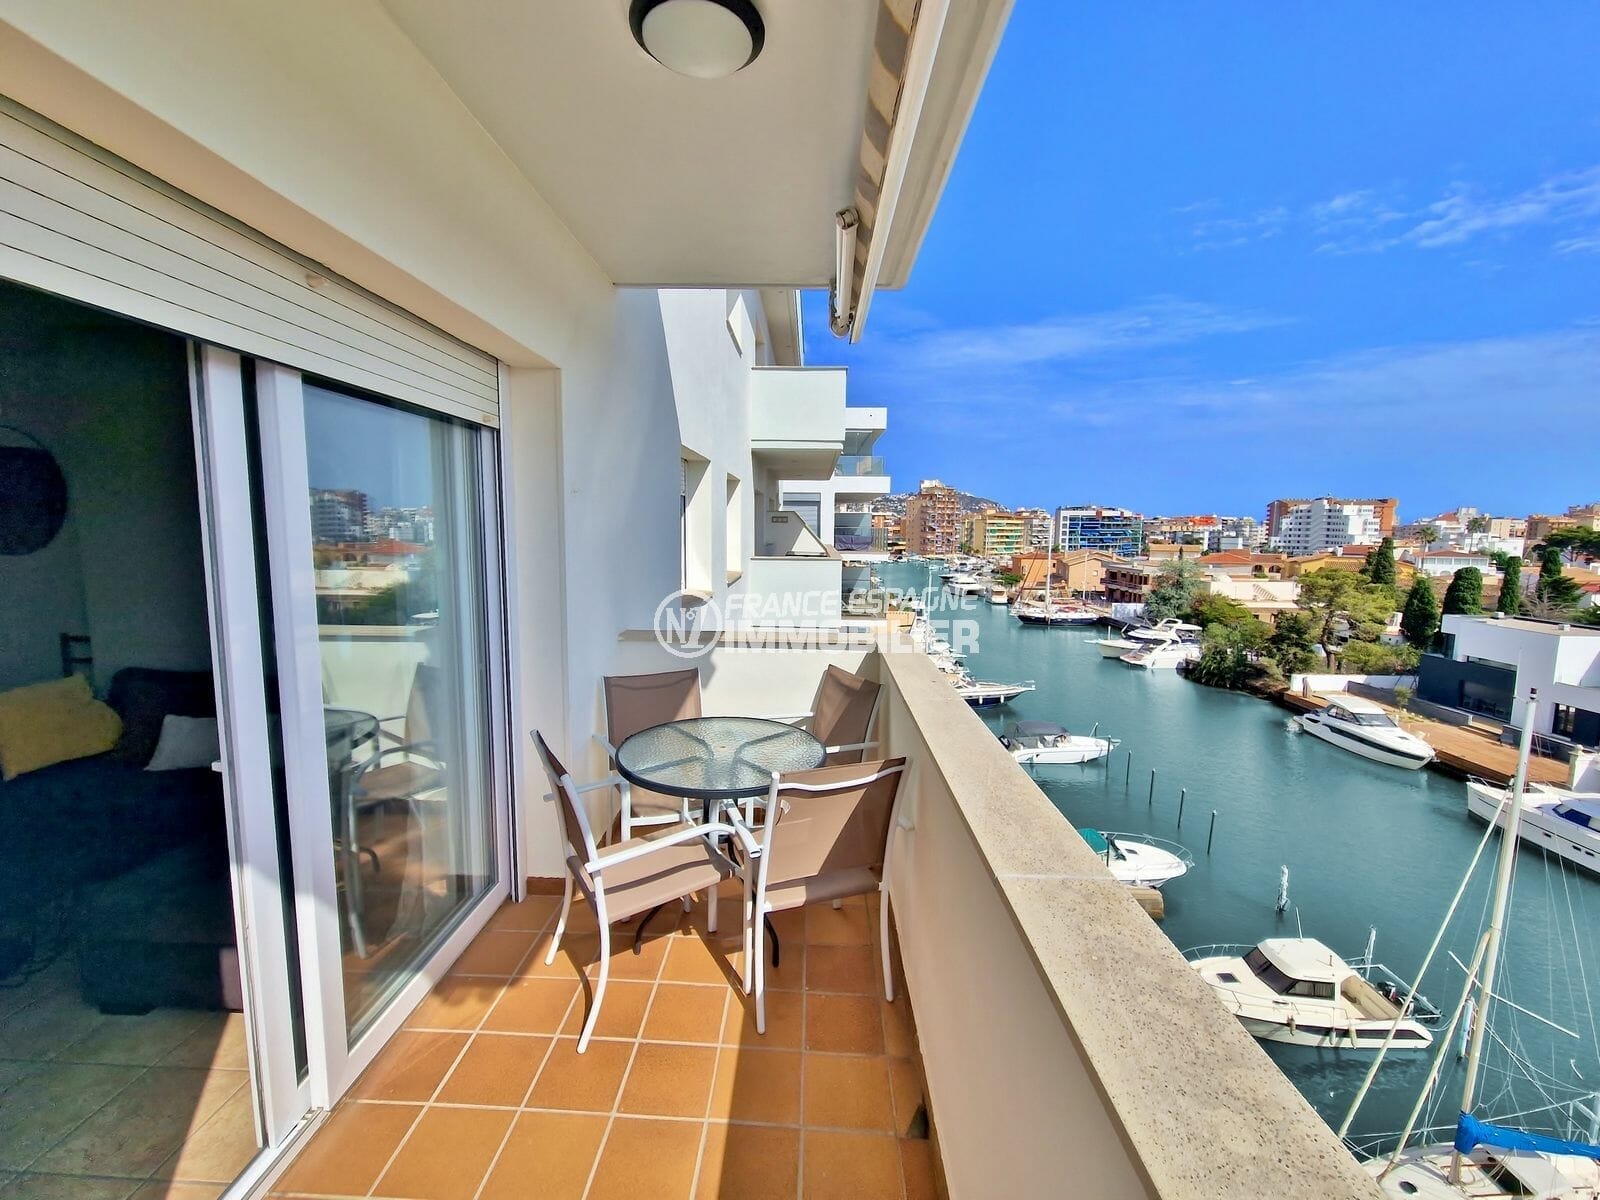 Exclusivitat roses – 3 dormitoris appt, terrassa amb vistes al canal, platja 800m